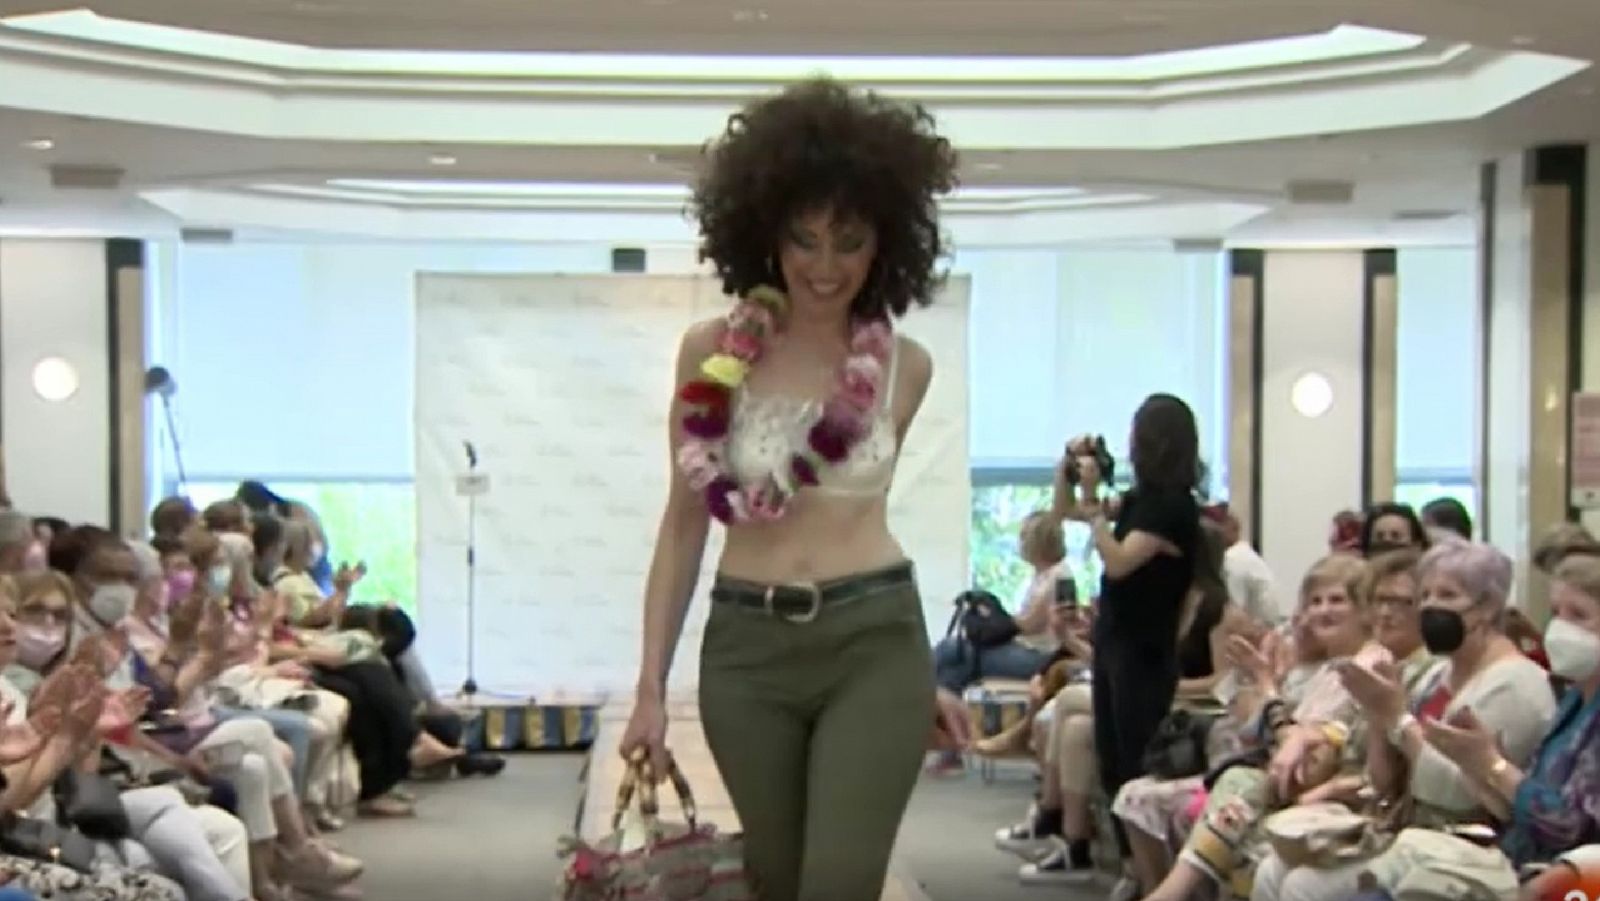 Más visibilidad y modelos que han sufrido cáncer: vuelve el desfile de moda de la ACC de Valladolid 